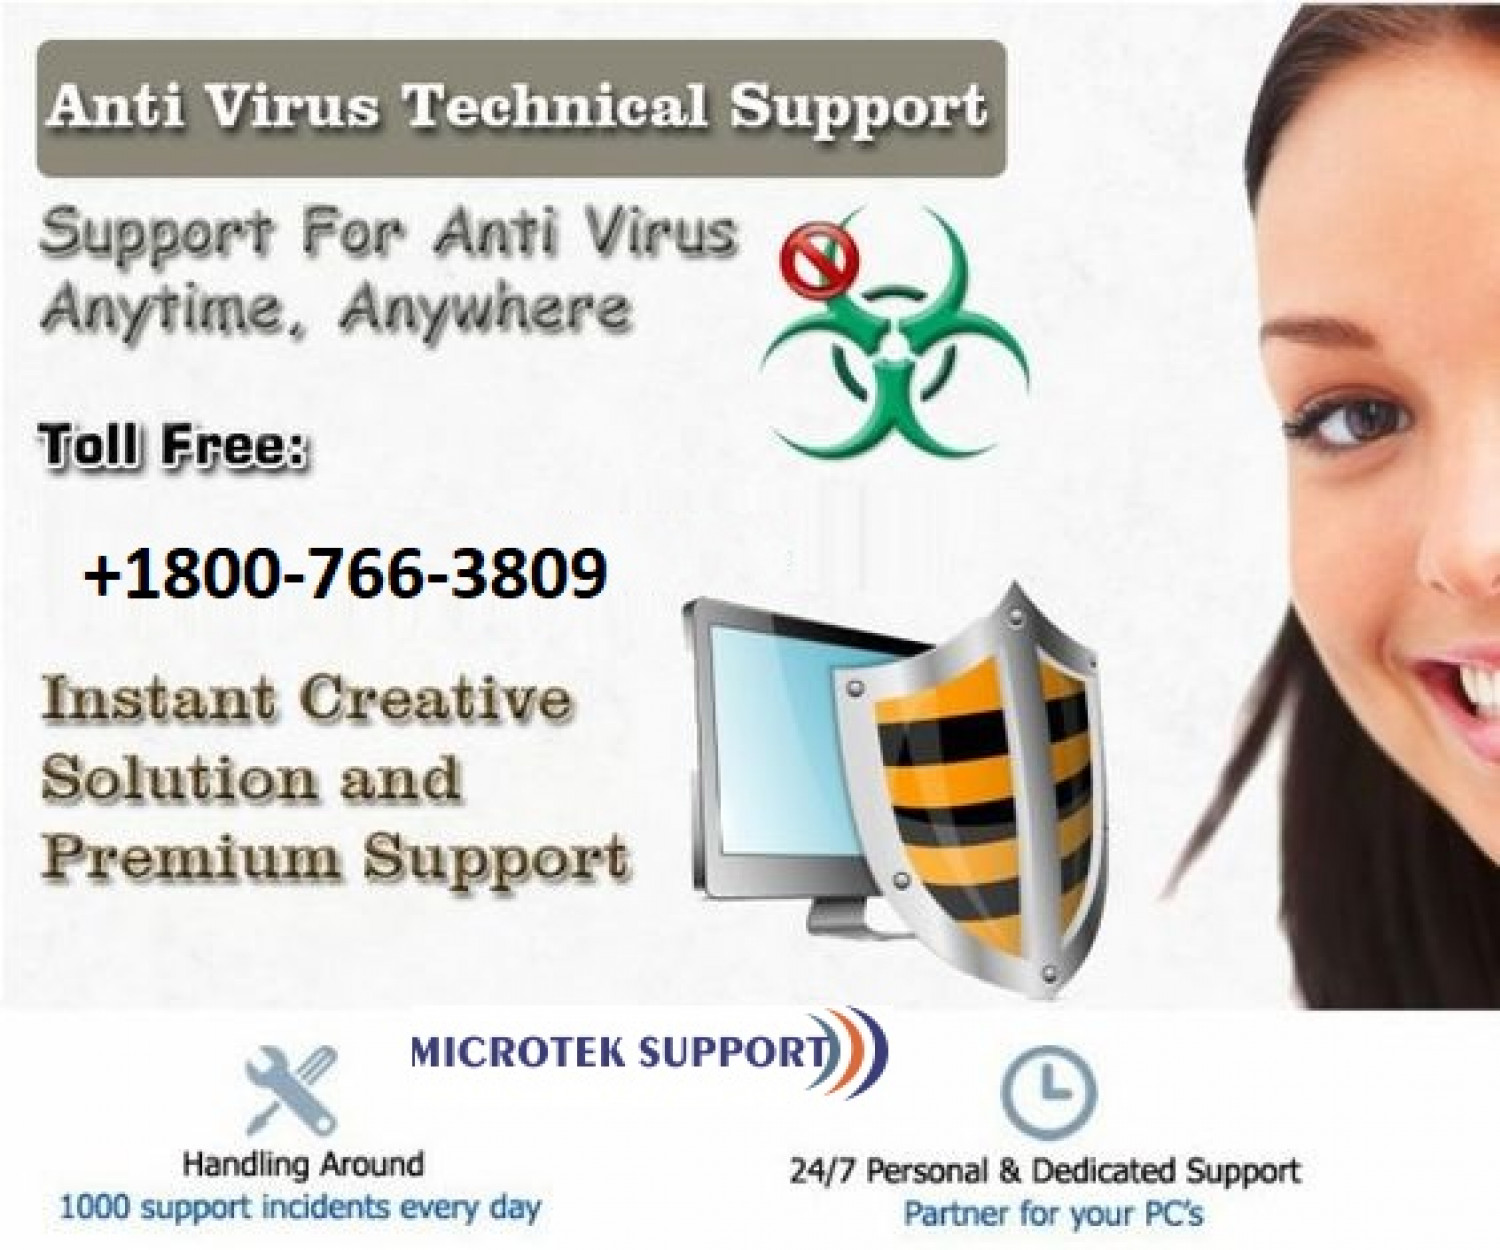 Panda Antivirus Customer Support Infographic